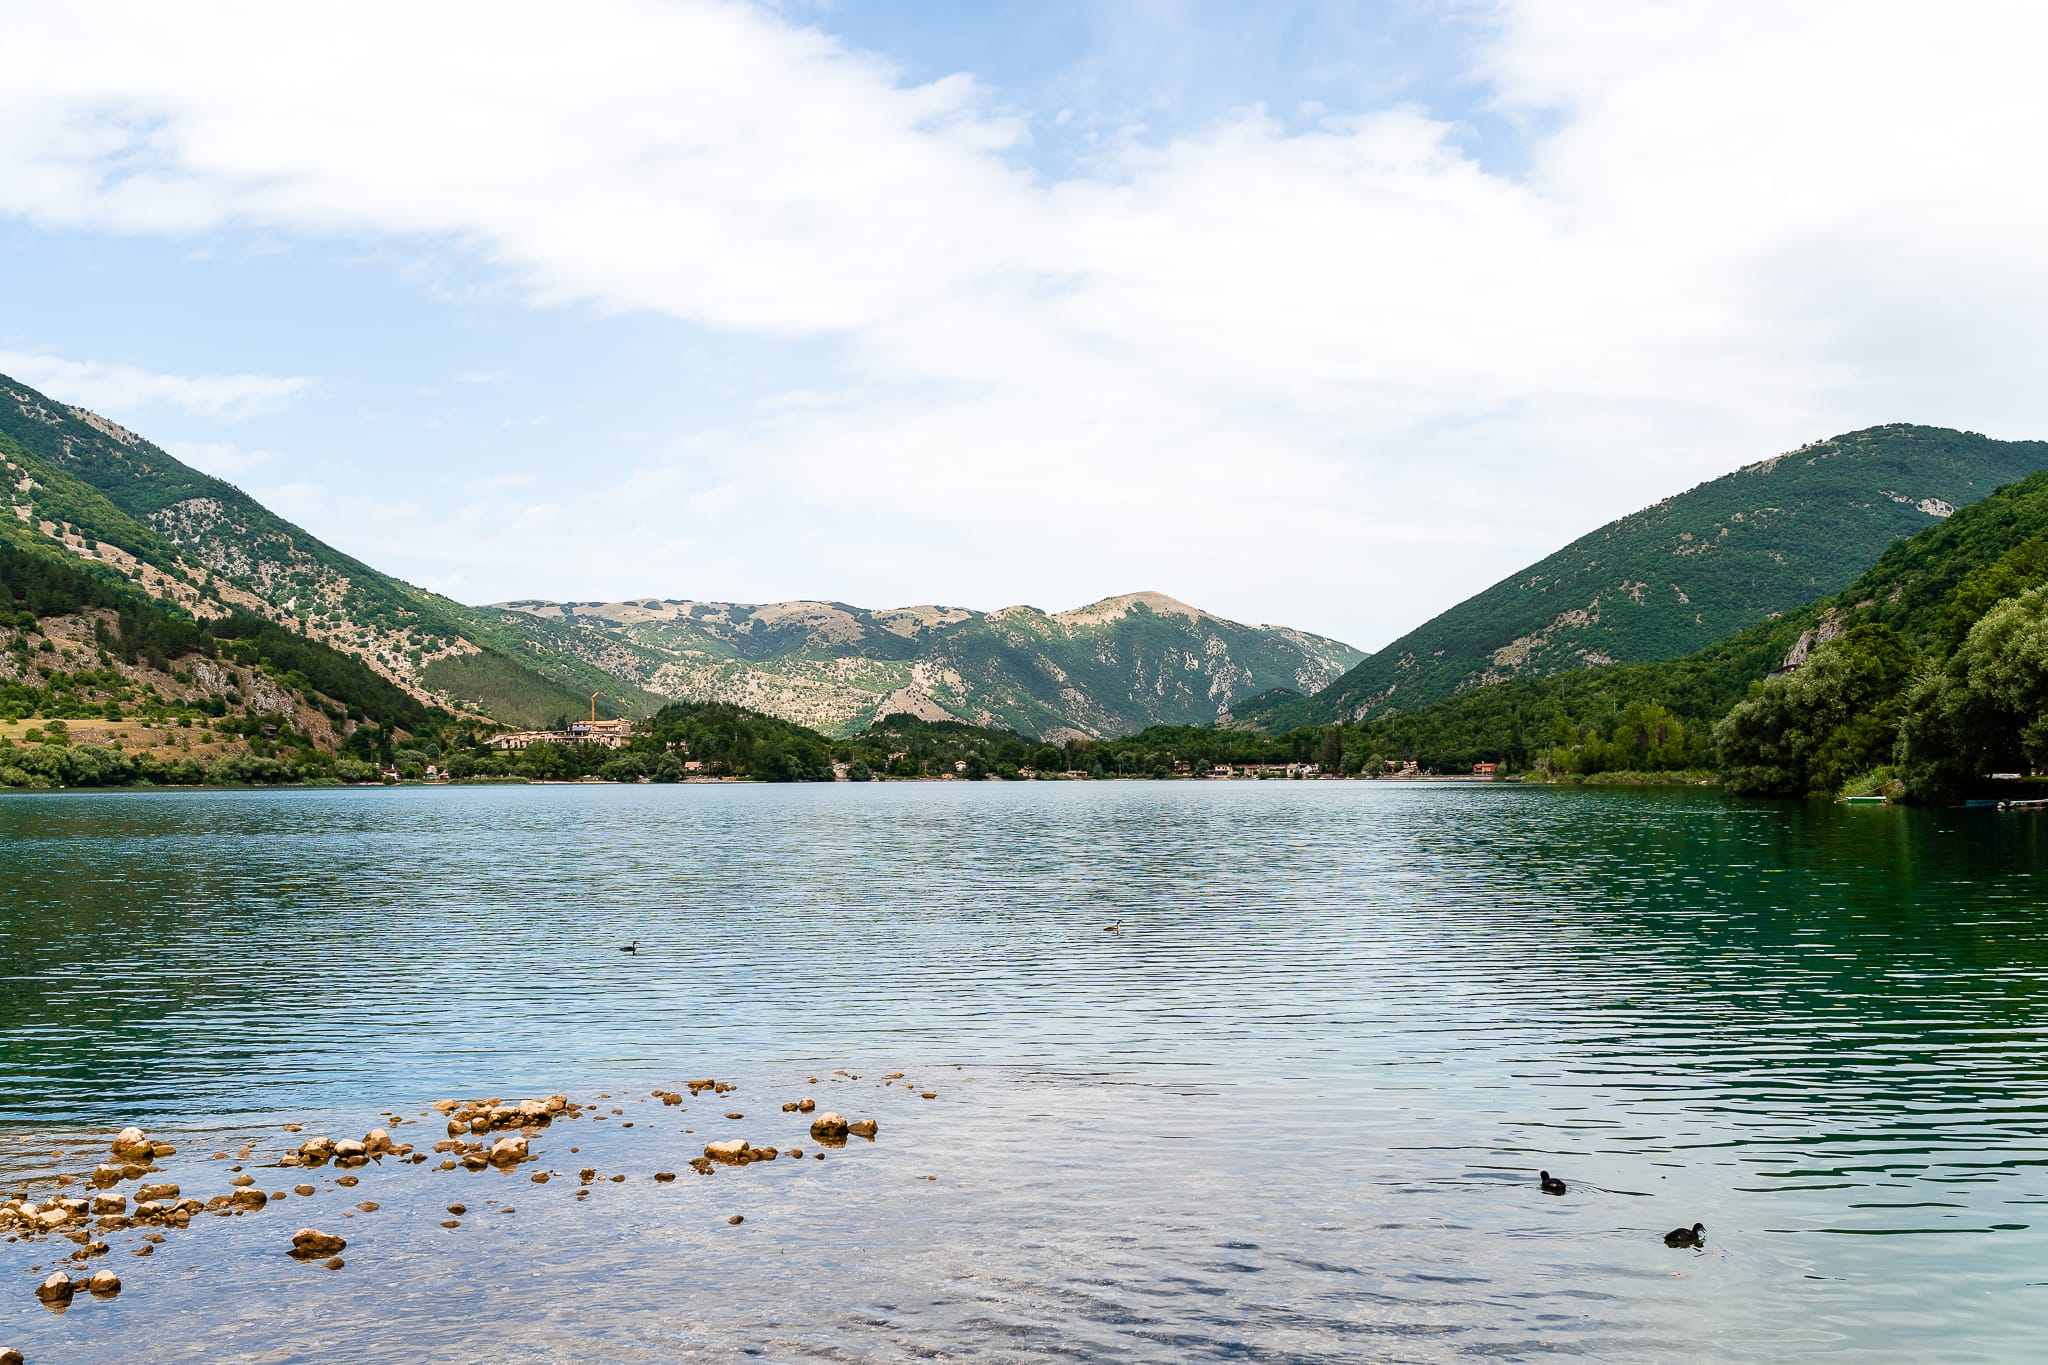 Tania Matteo Prematrimoniale Abruzzo Lago di Scanno Sulmona panorama lago